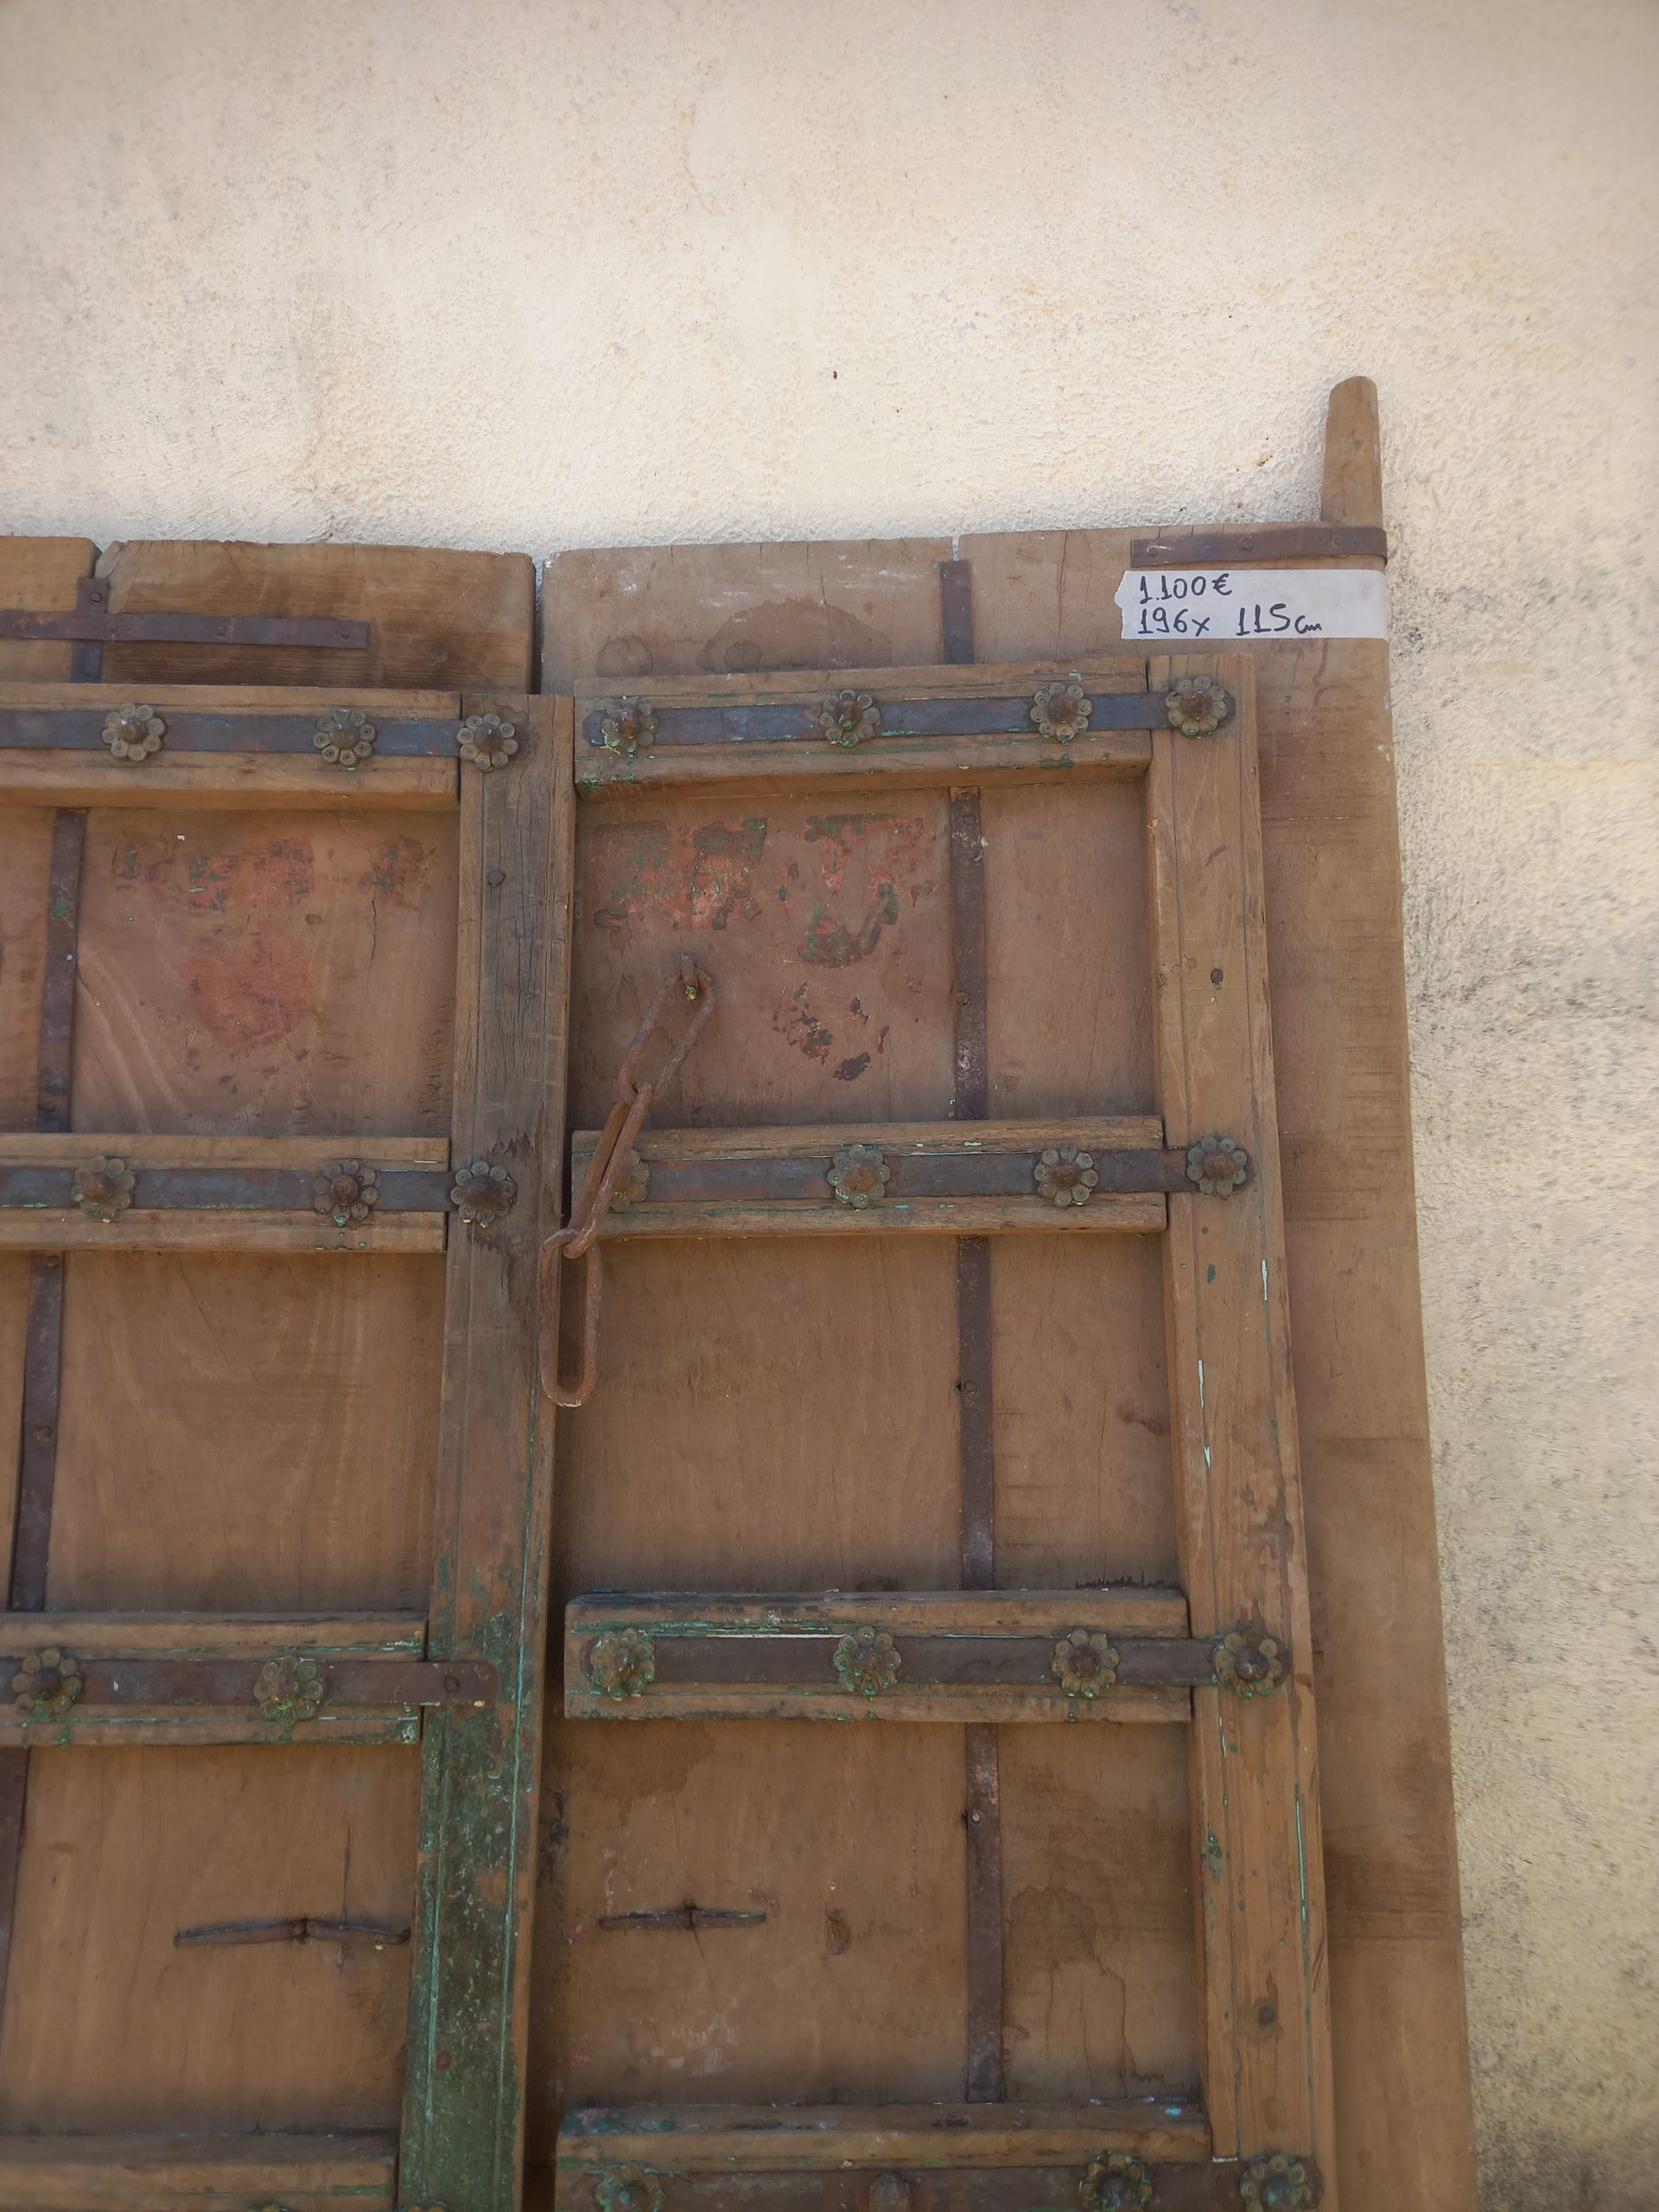 παλιές ξύλινες πόρτες ζευγάρι,σε φυσικό χρώμα ξύλου, με πράσινες λεπτομέρειες, και σδερένια ελάσματα διακοσμημένα με ροζέτες, ύψος 196 , πλάτος 115 εκ, πάχος 10 εκ